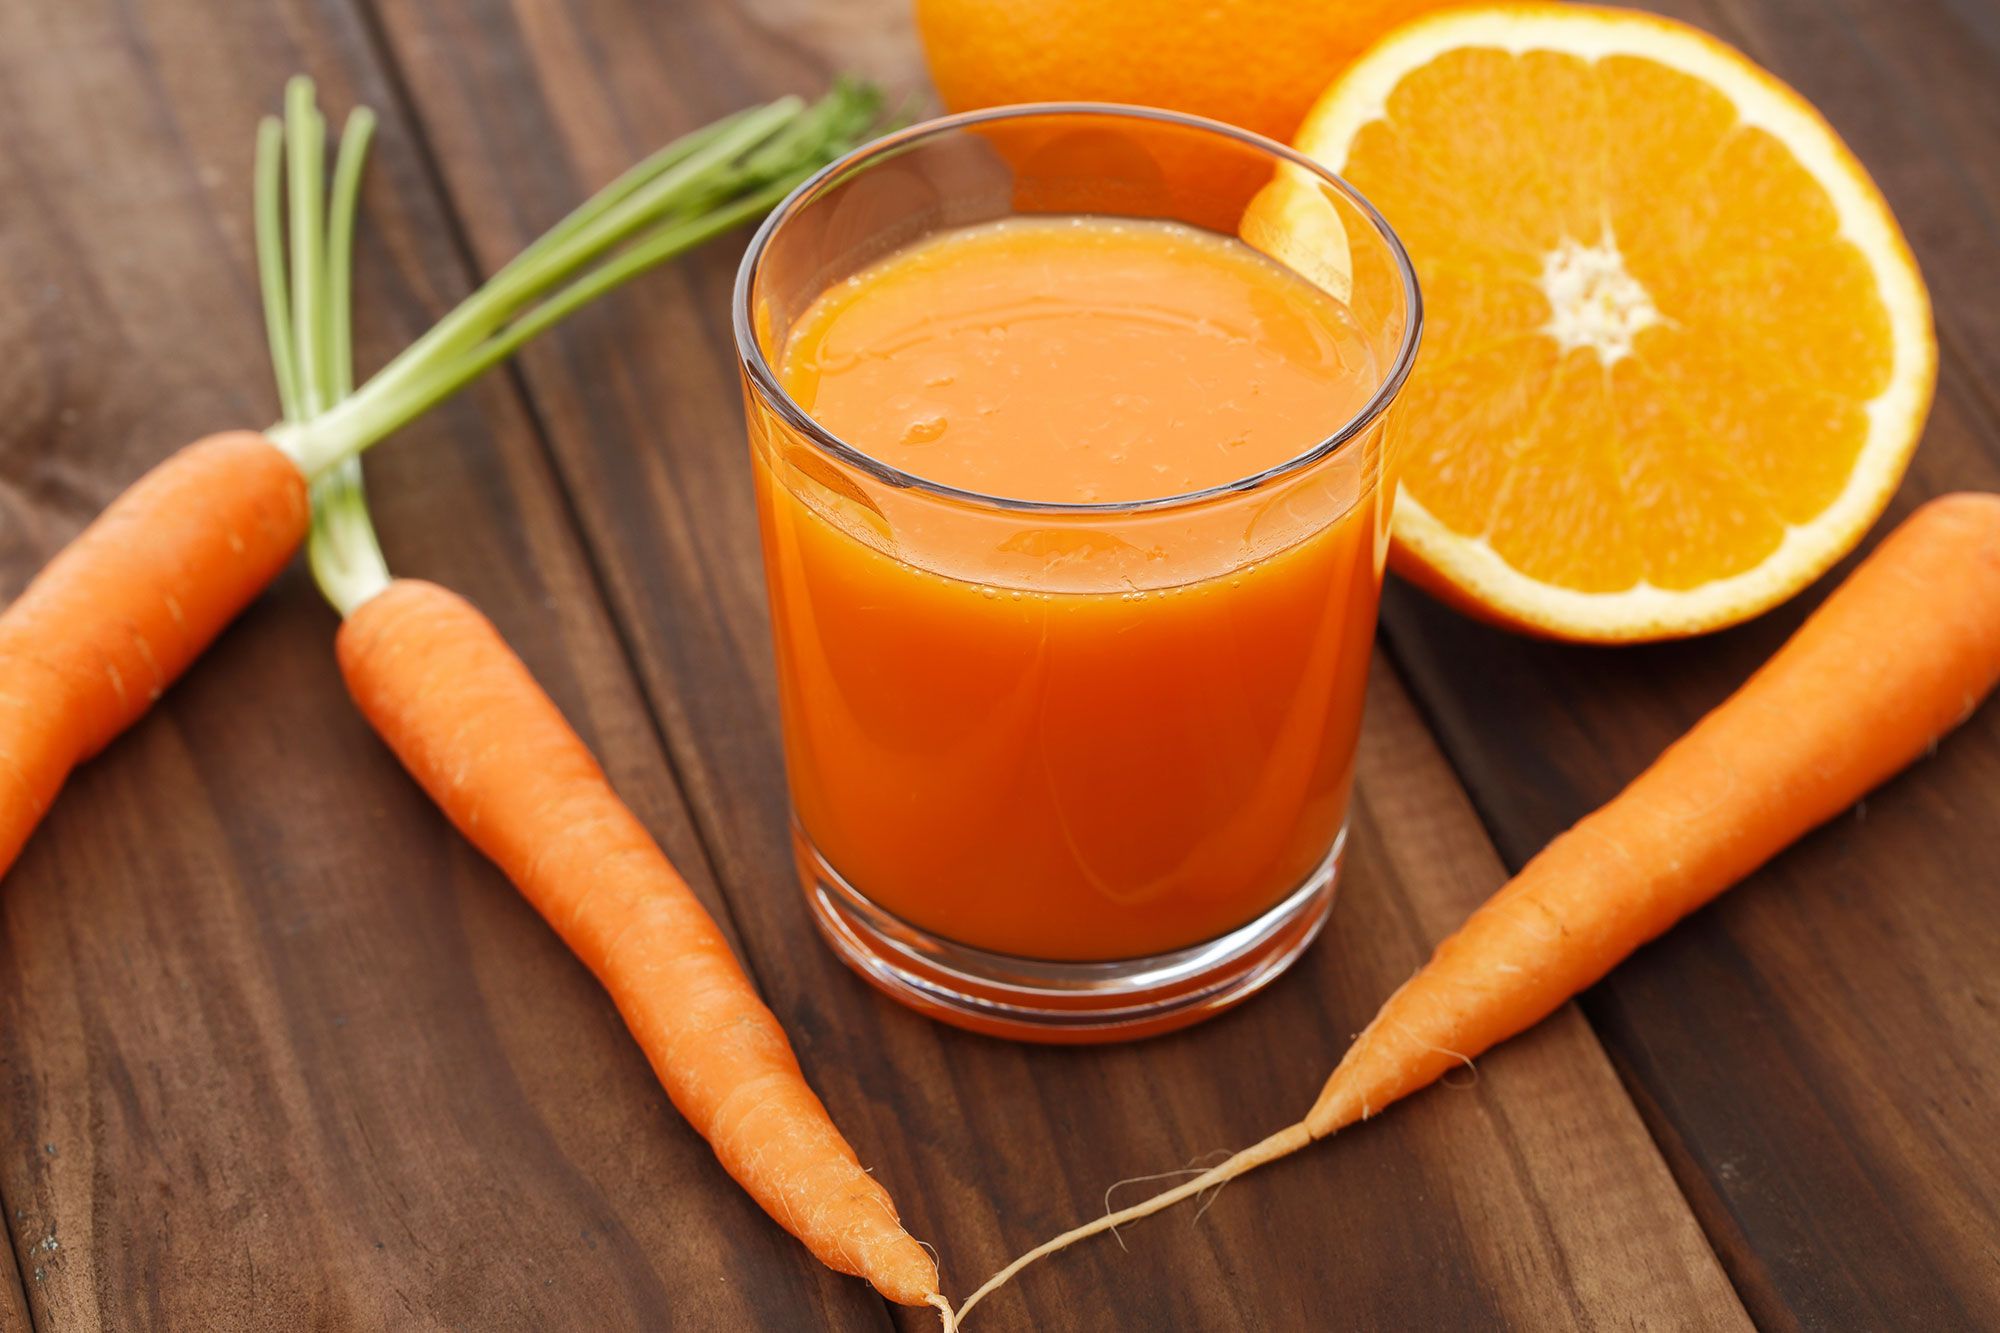 Como hacer jugo de zanahorias